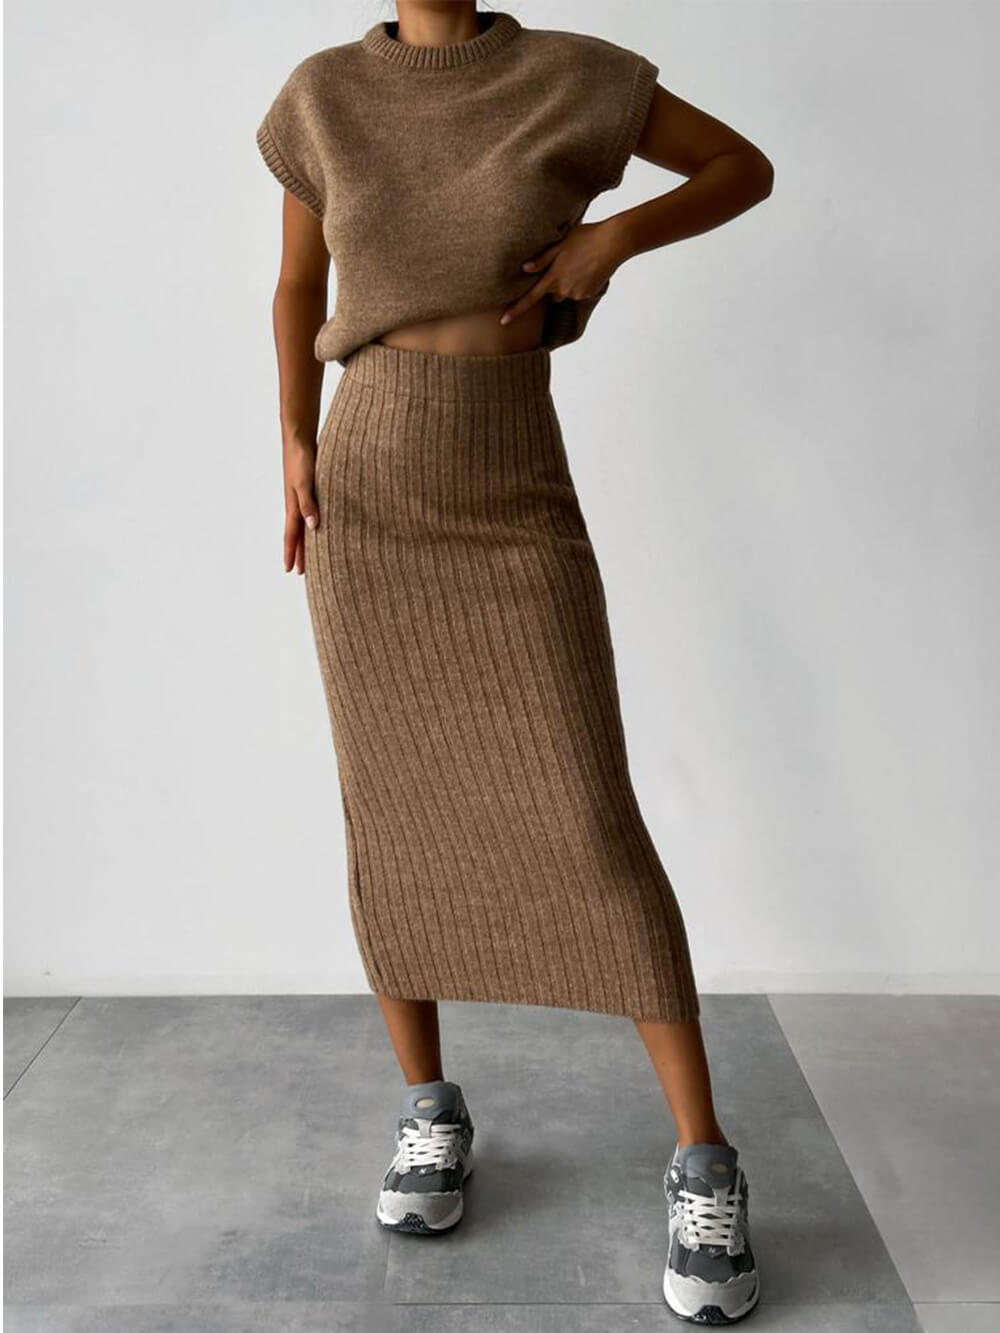 Costume tricoté simple et décontracté sans manches